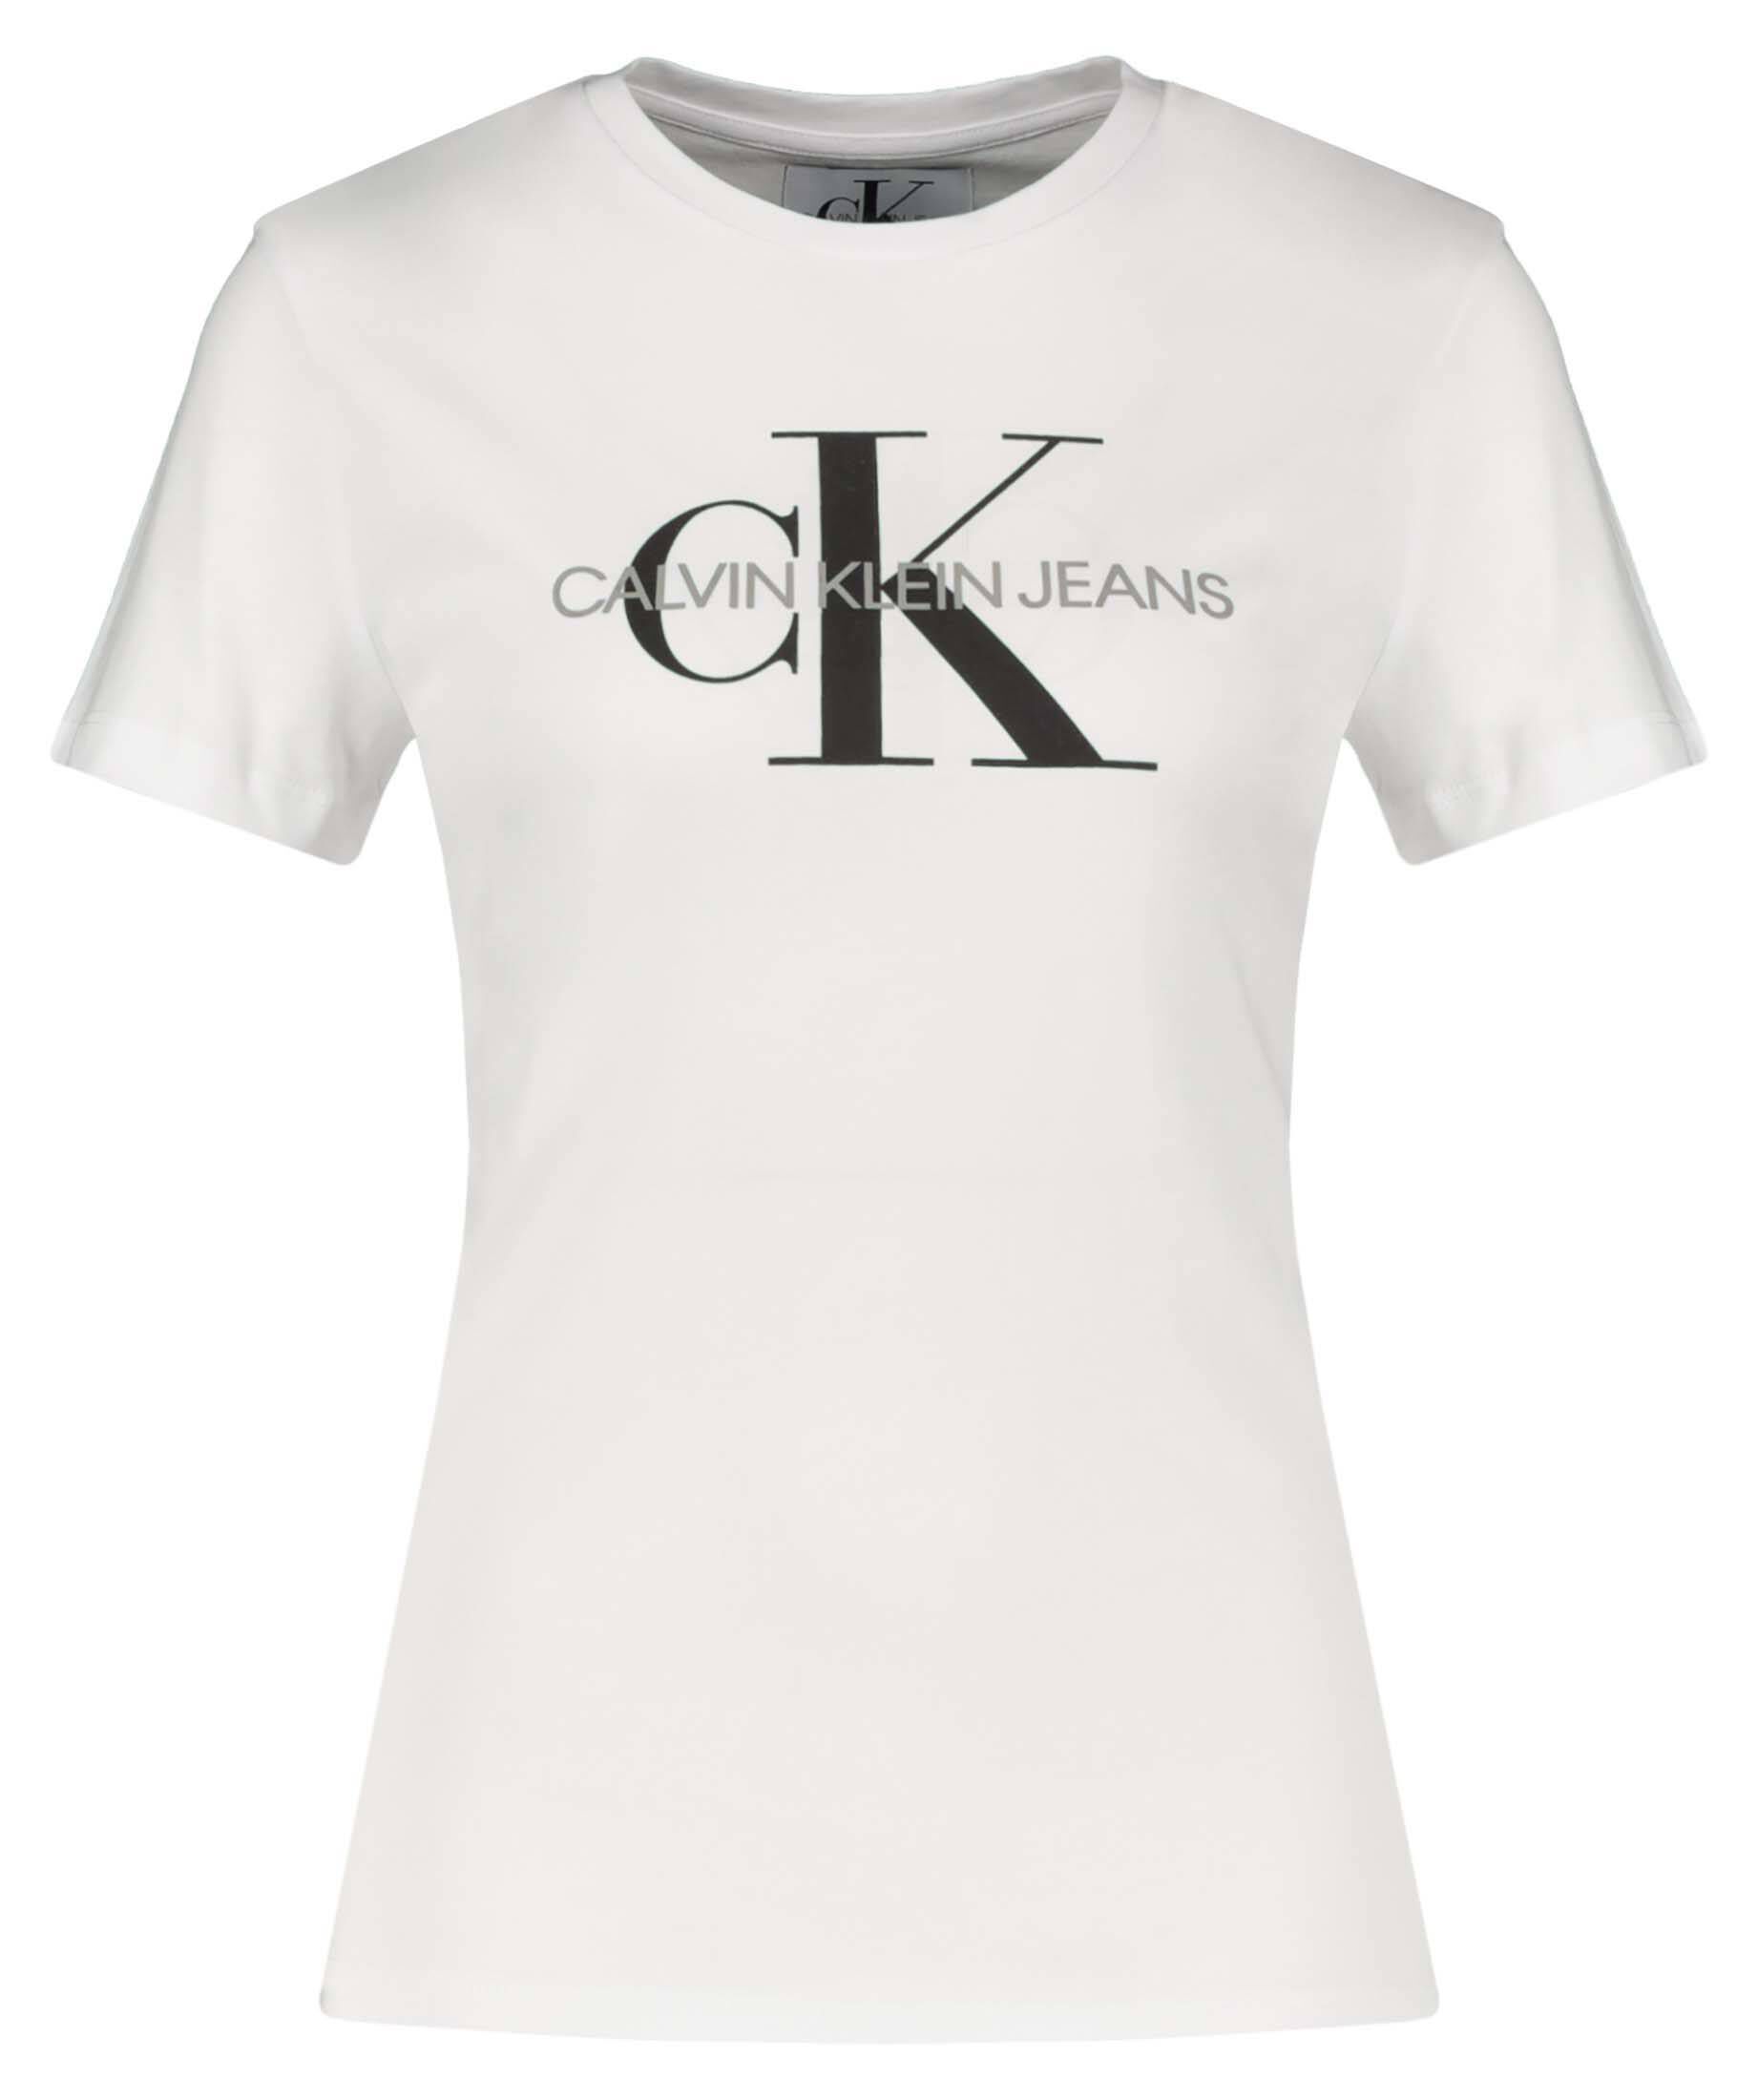 CALVIN KLEIN JEANS Damen T-Shirt CORE MONOGRAM LOGO REGULAR FIT TEE kaufen  | engelhorn